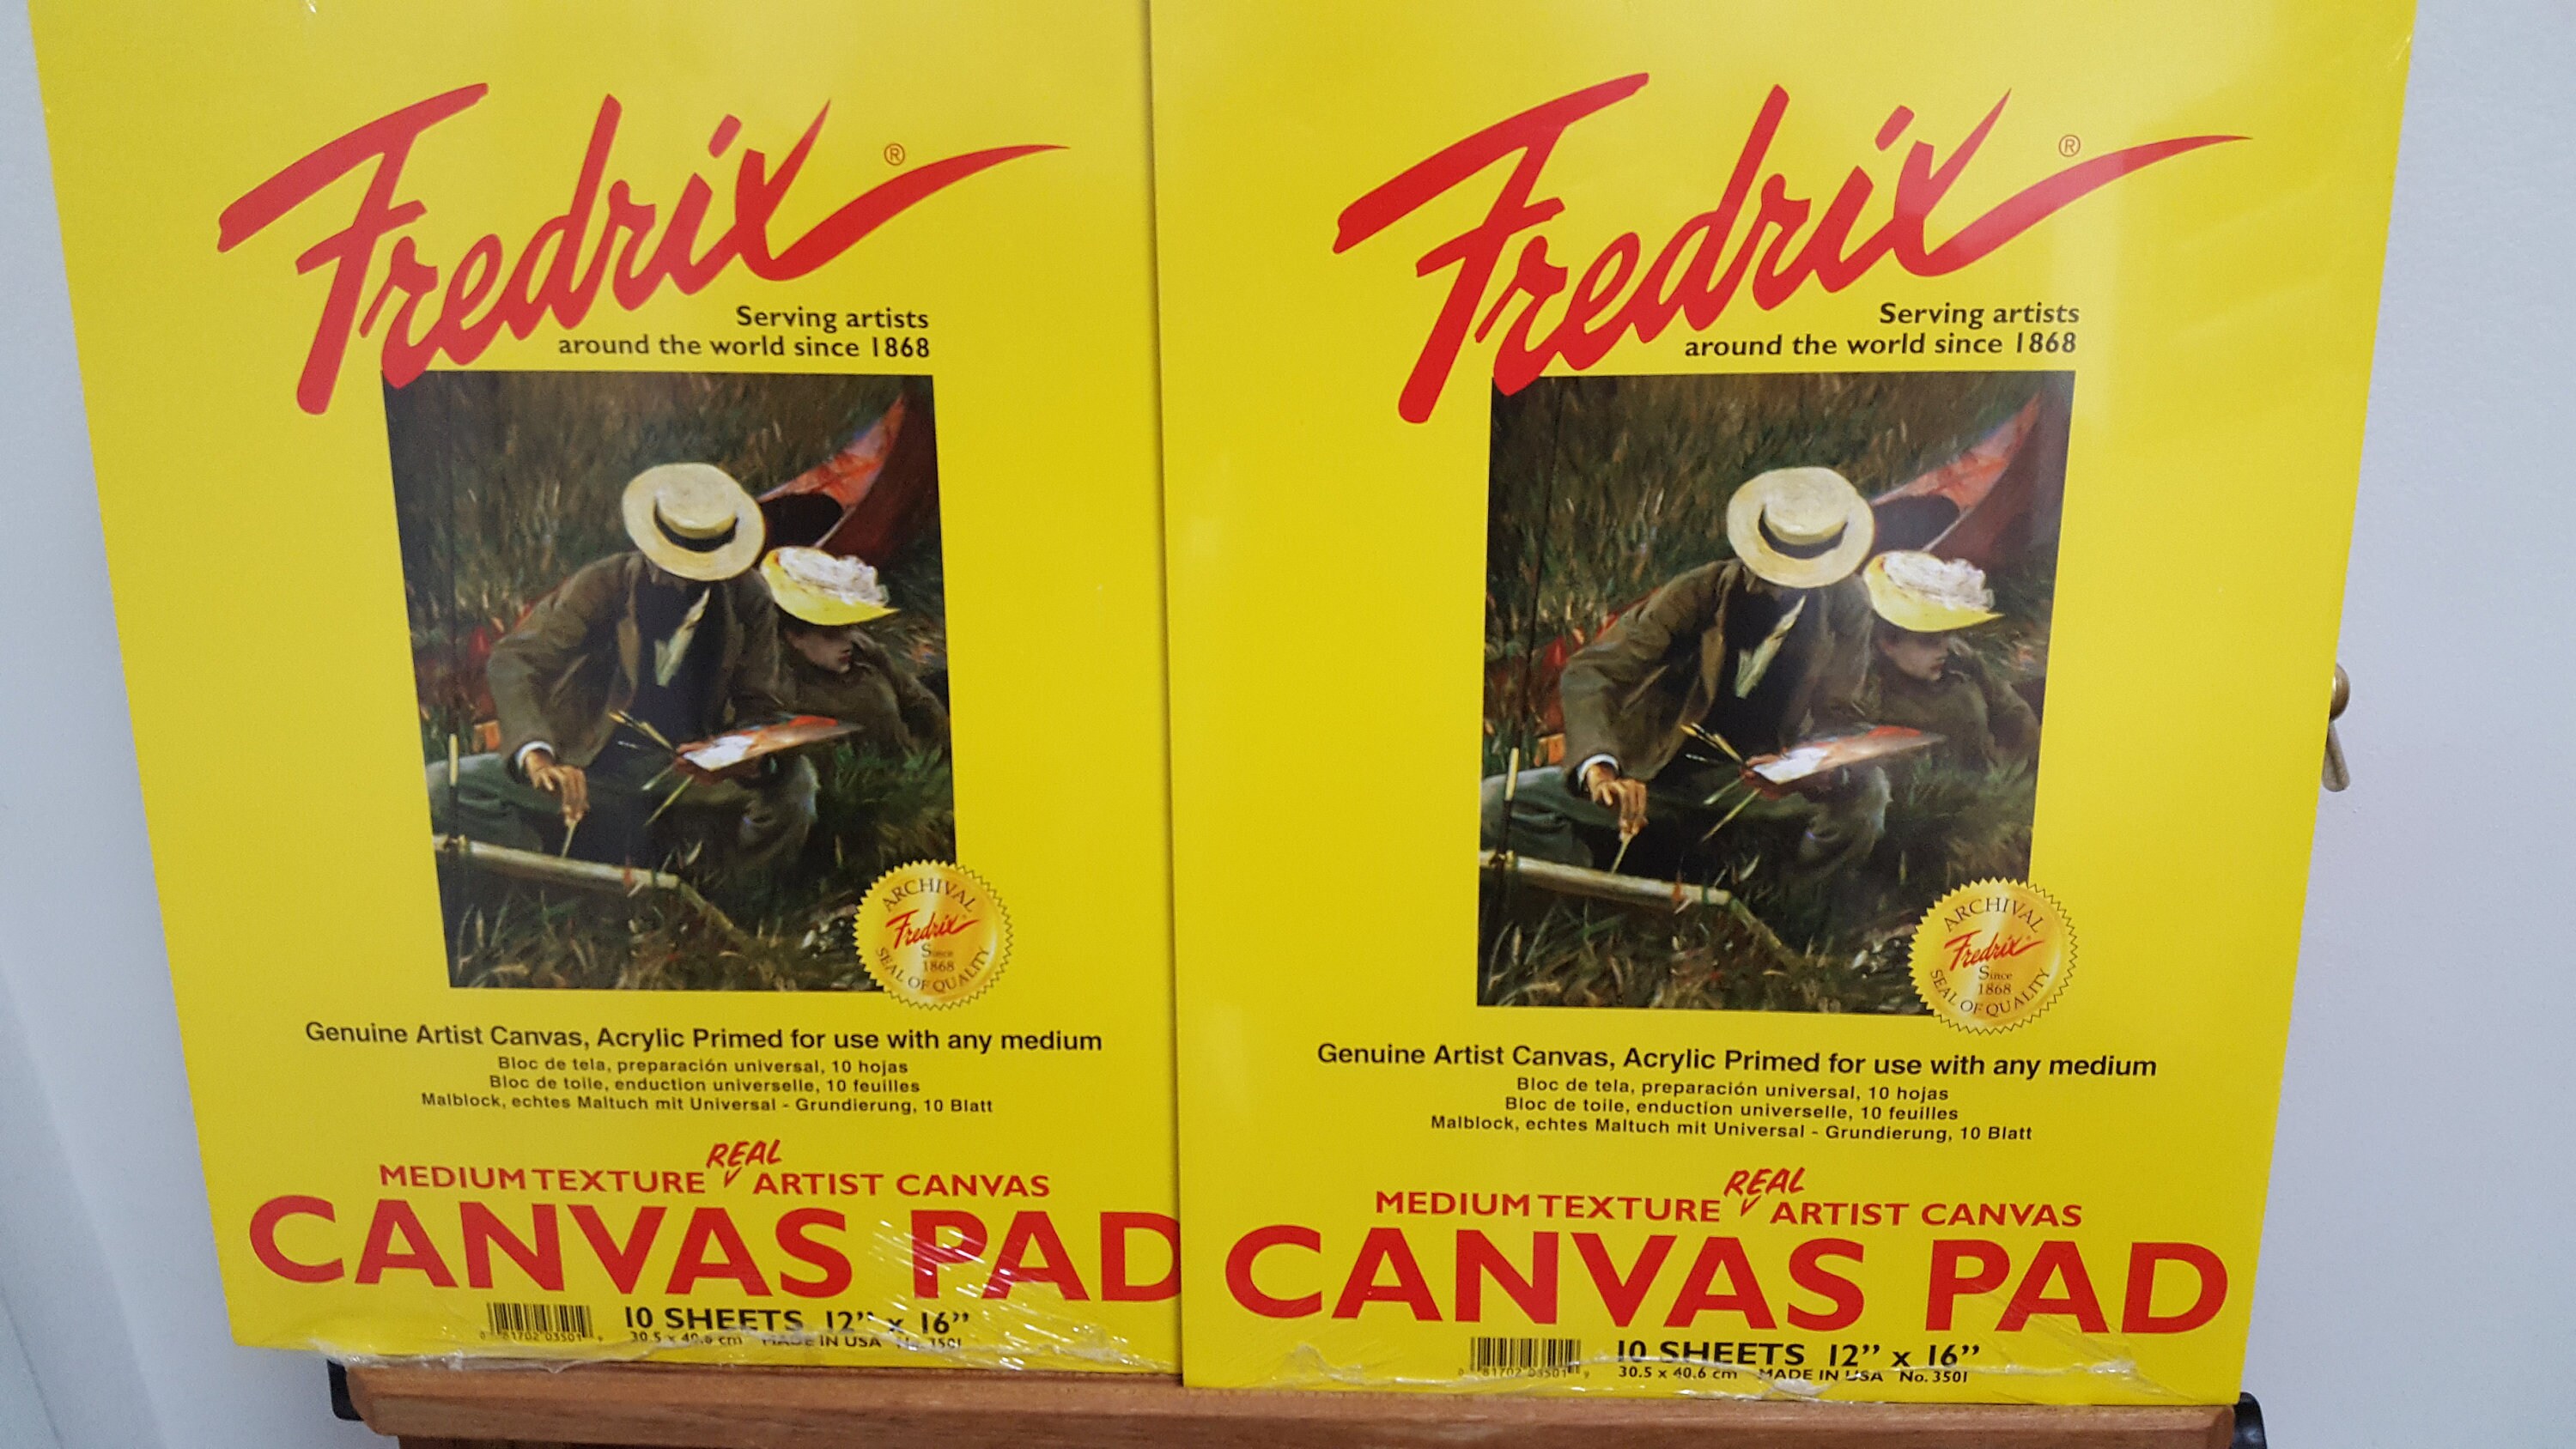 Fredrix Canvas Pads